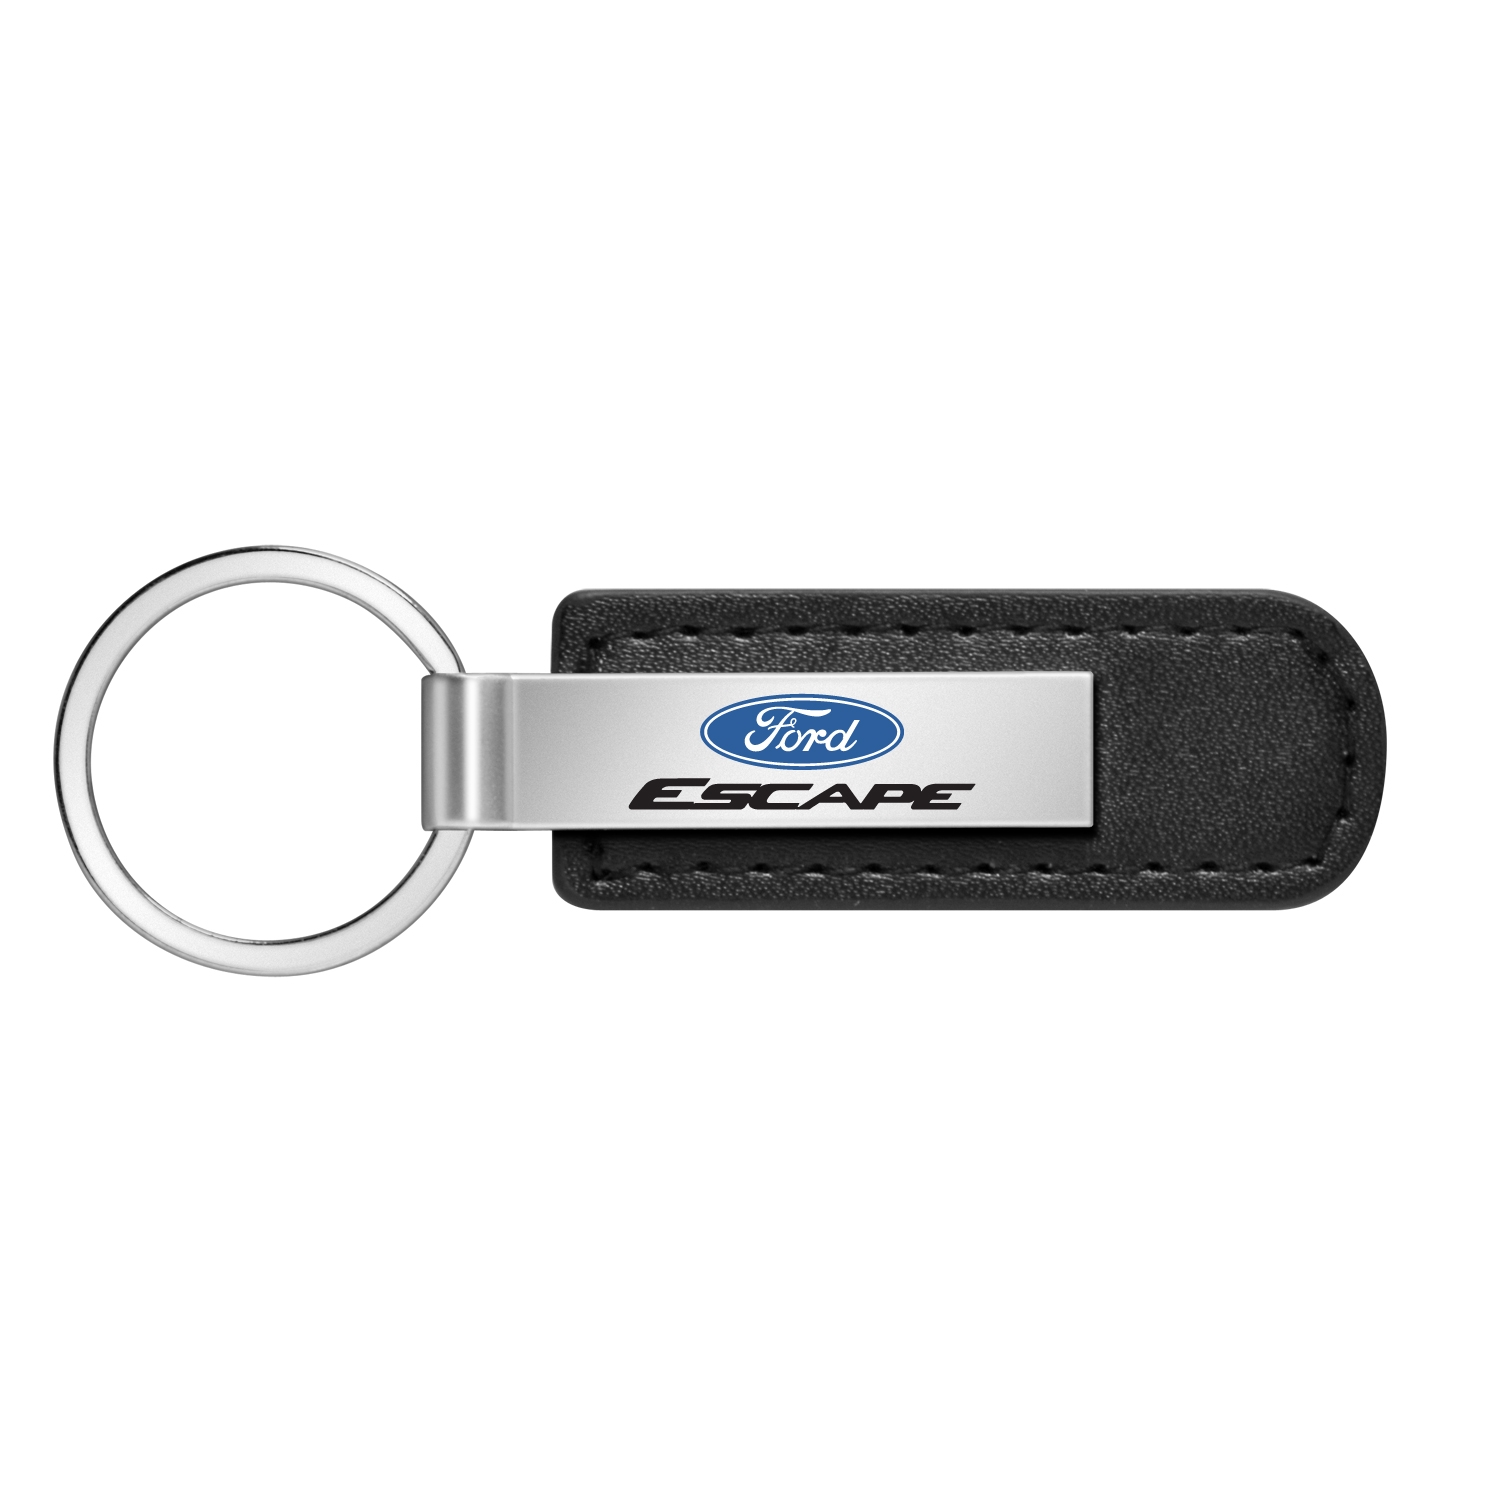 Ford Escape Black Leather Strap Key Chain